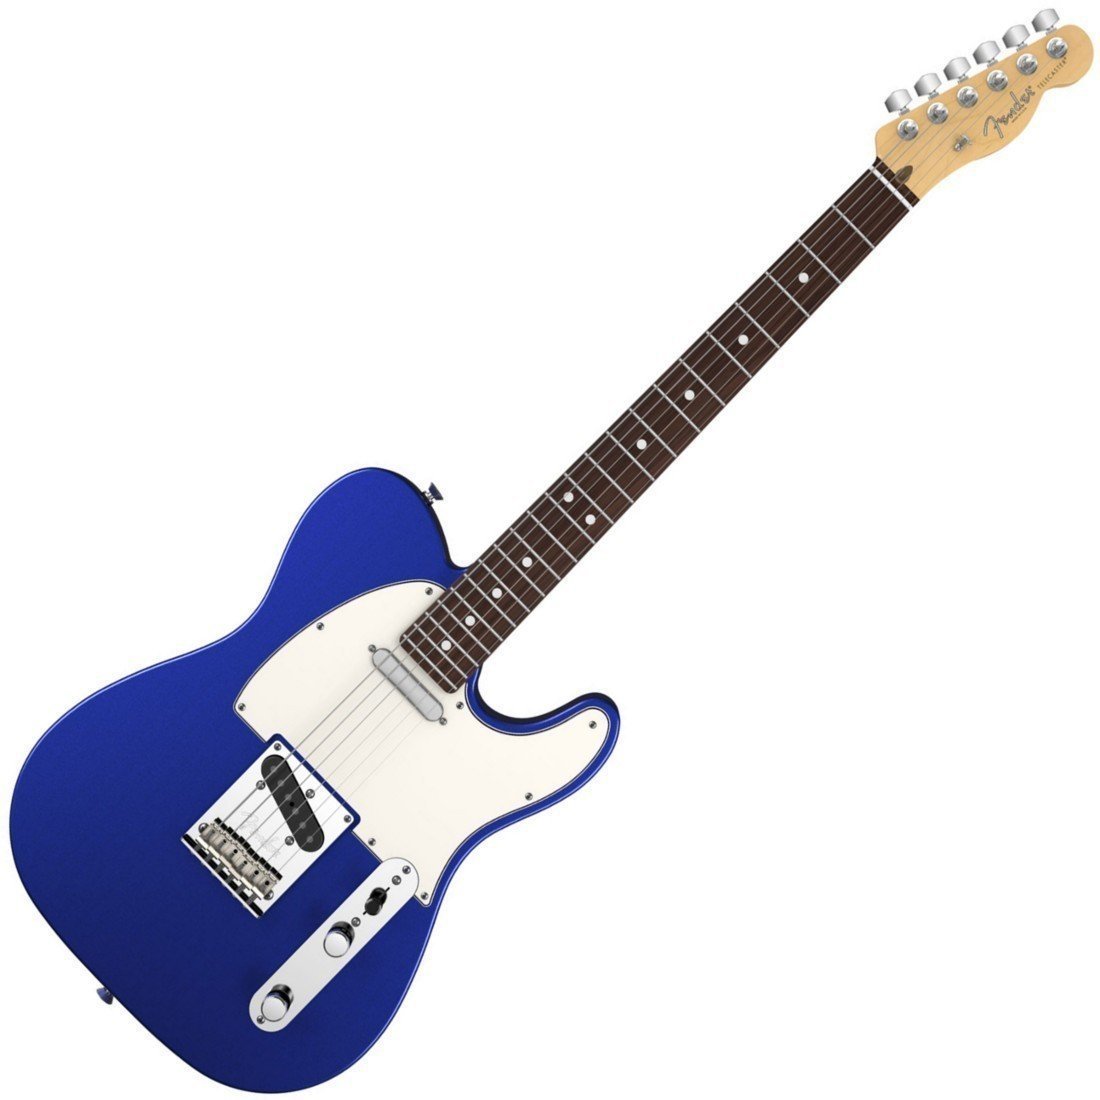 Ηλεκτρική Κιθάρα Fender American Standard Telecaster, Rosewood Fingerboard, Mystic Blue